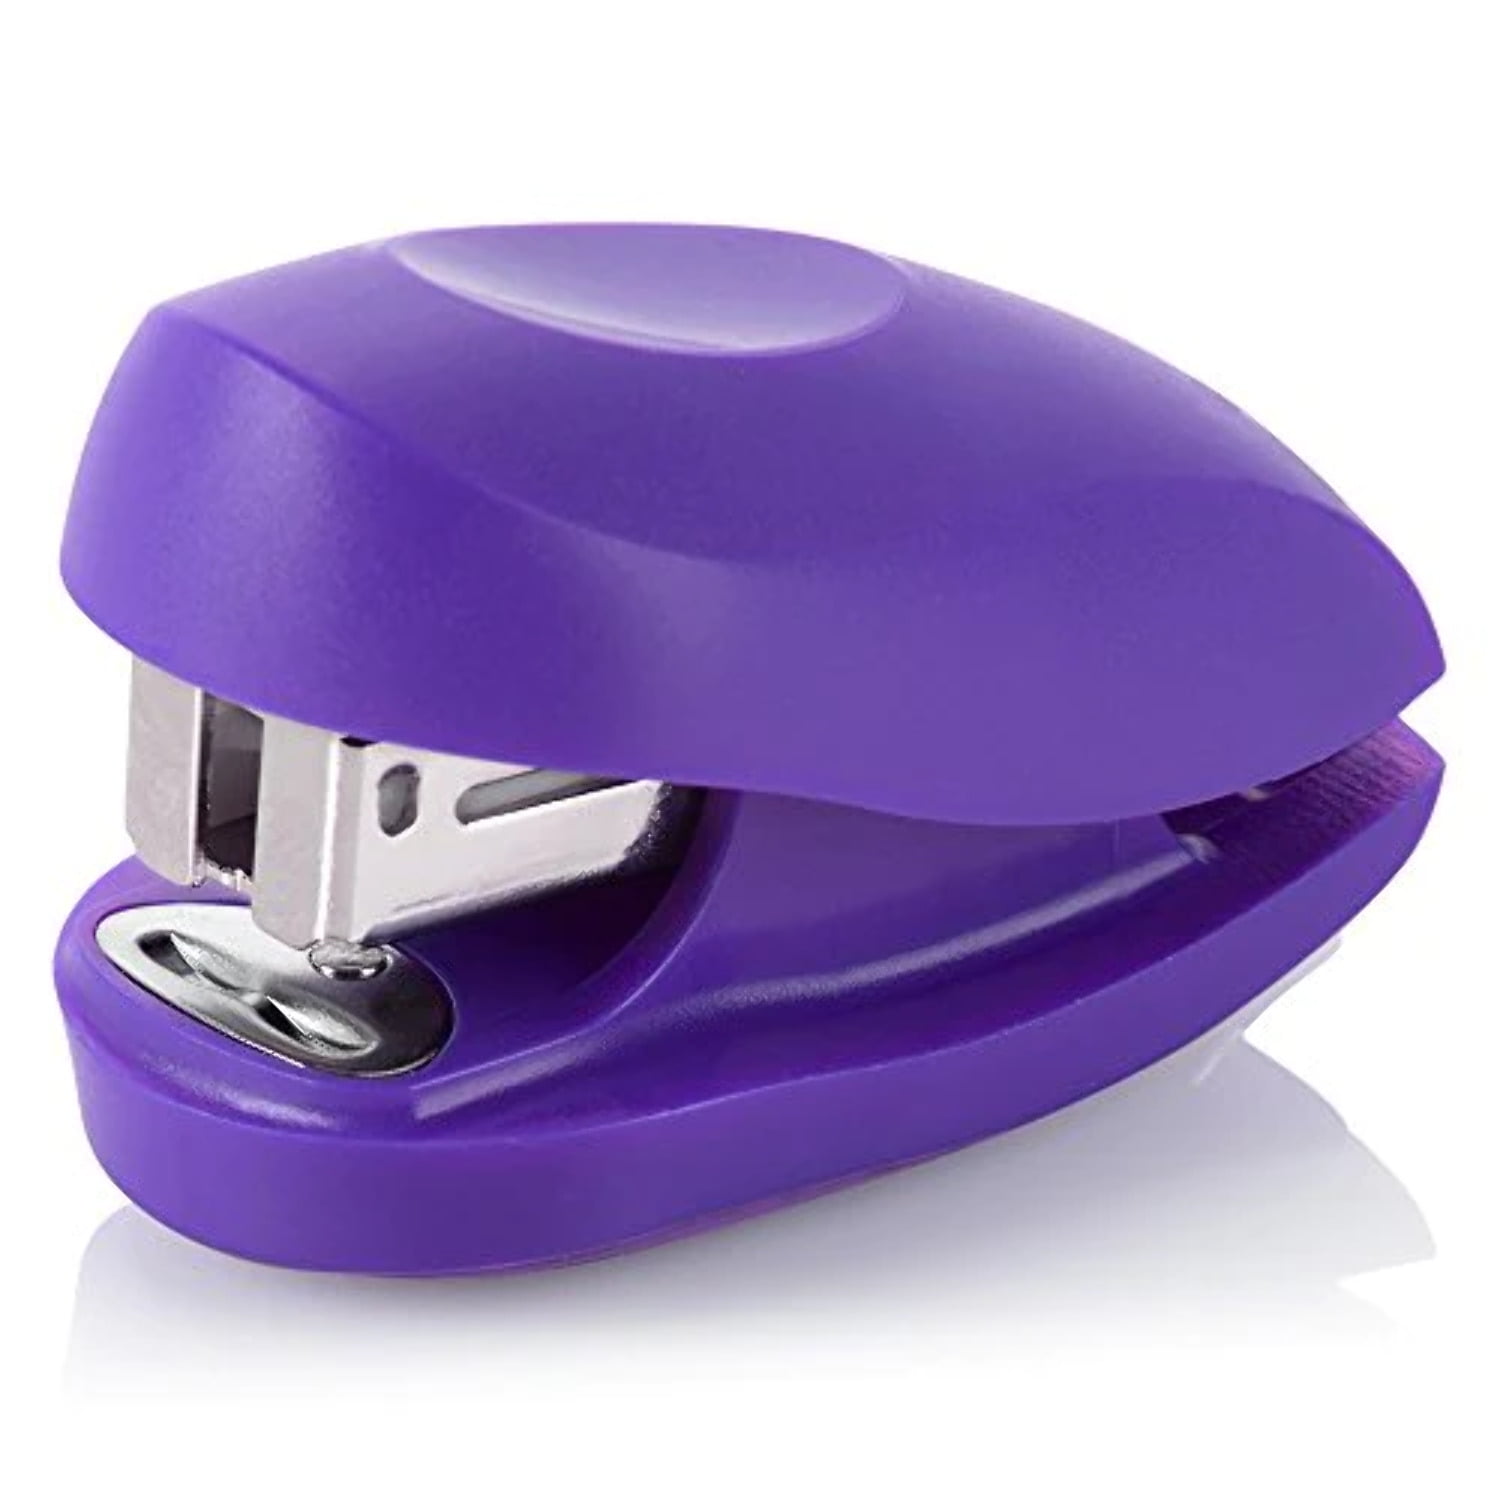 1PC Mini Plier Stapler Cute Handheld Desktop Stapler Purple